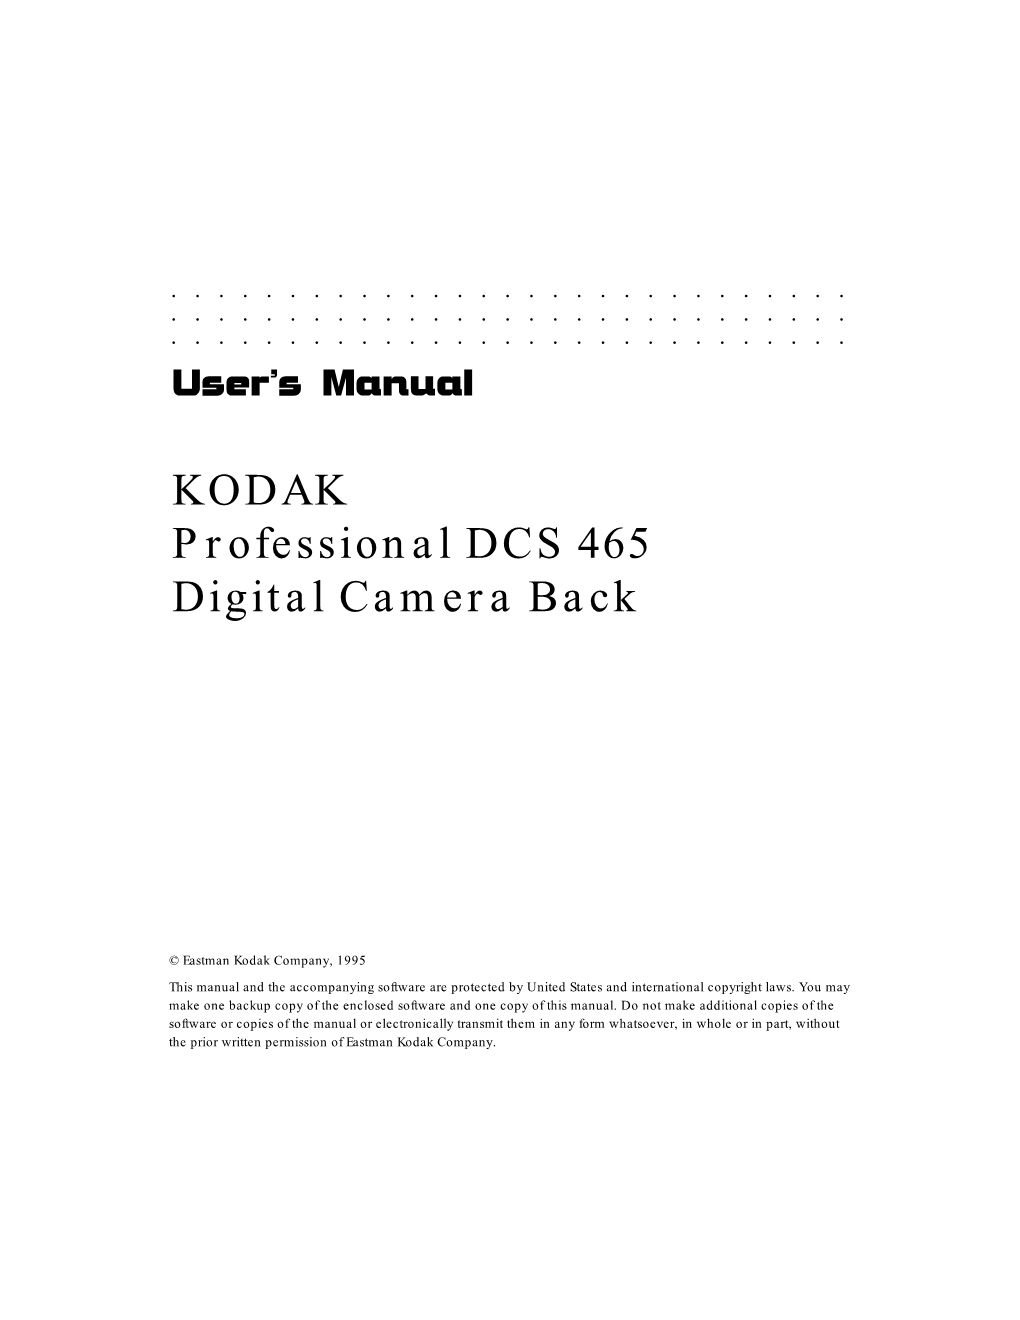 KODAK Professional DCS 465 Digital Camera Back